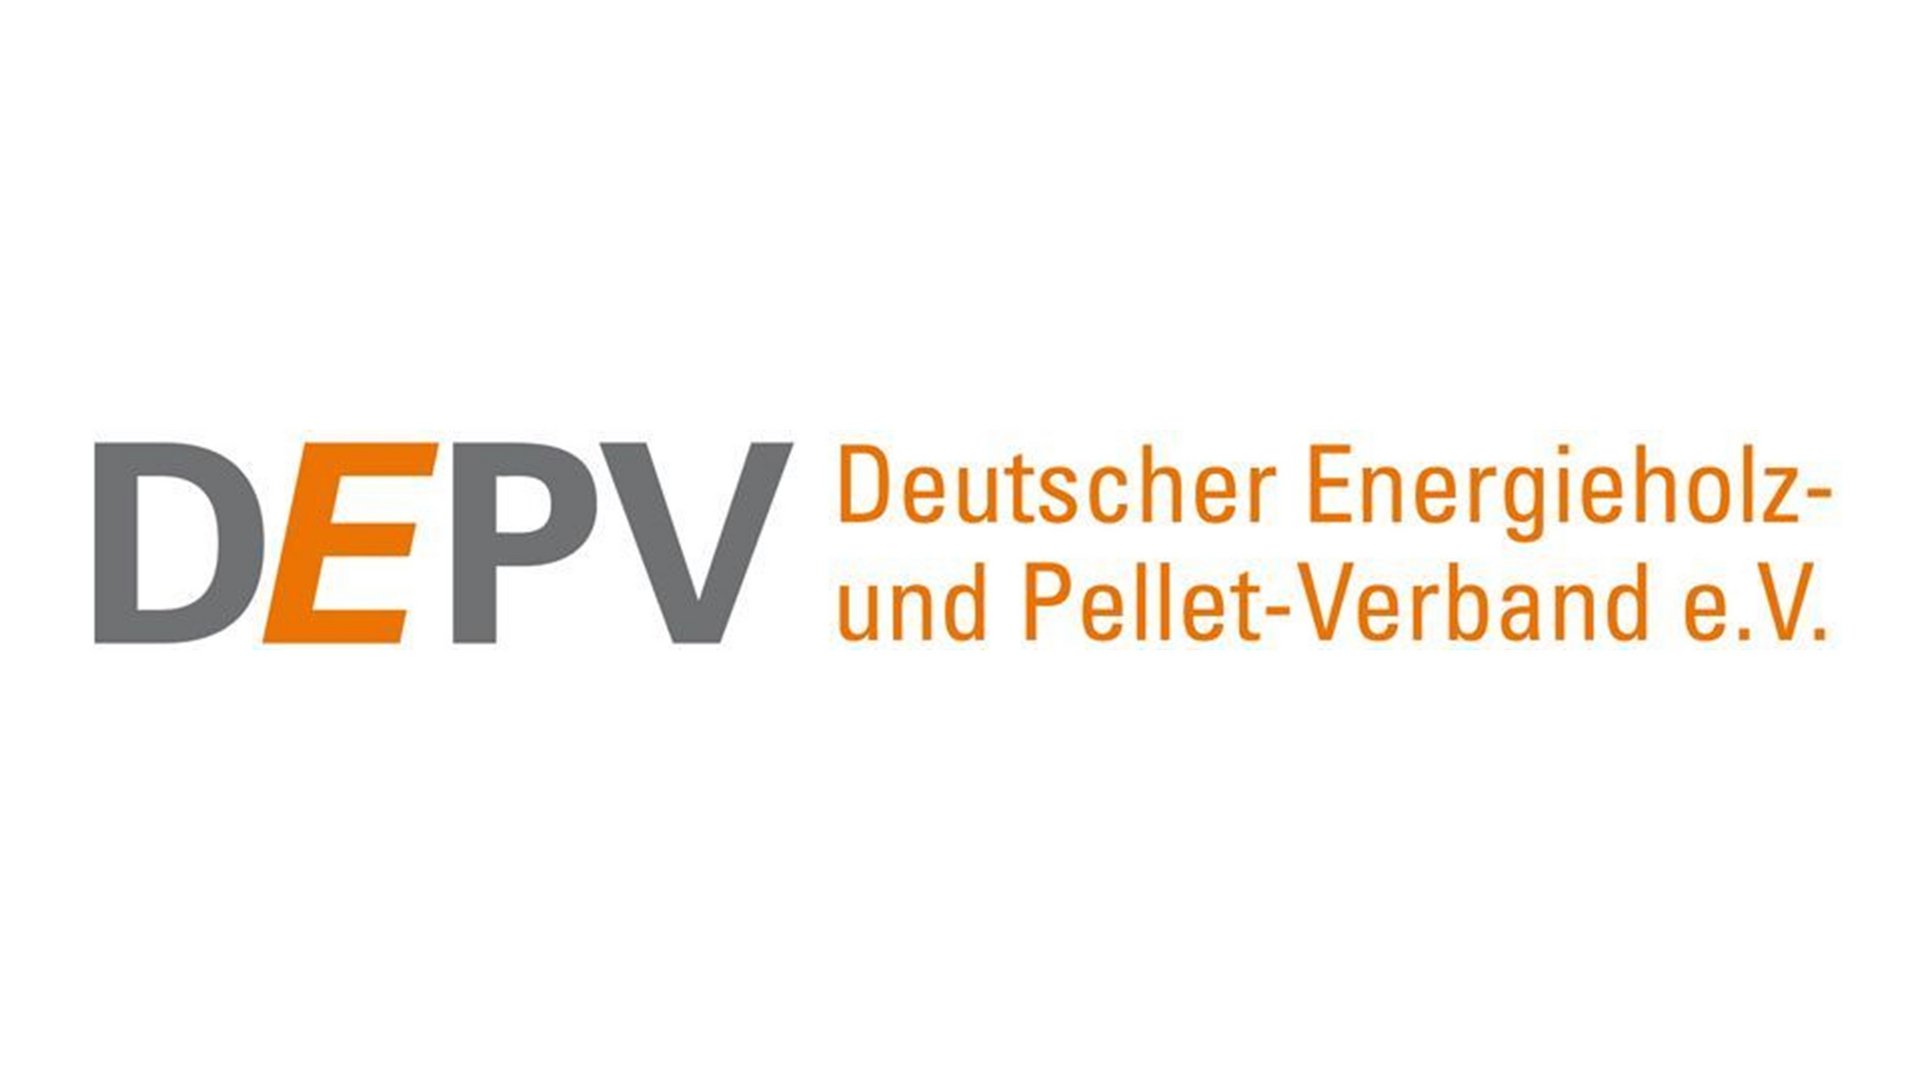 DEPV Logo Deutscher Energieholz und Pellet Verband